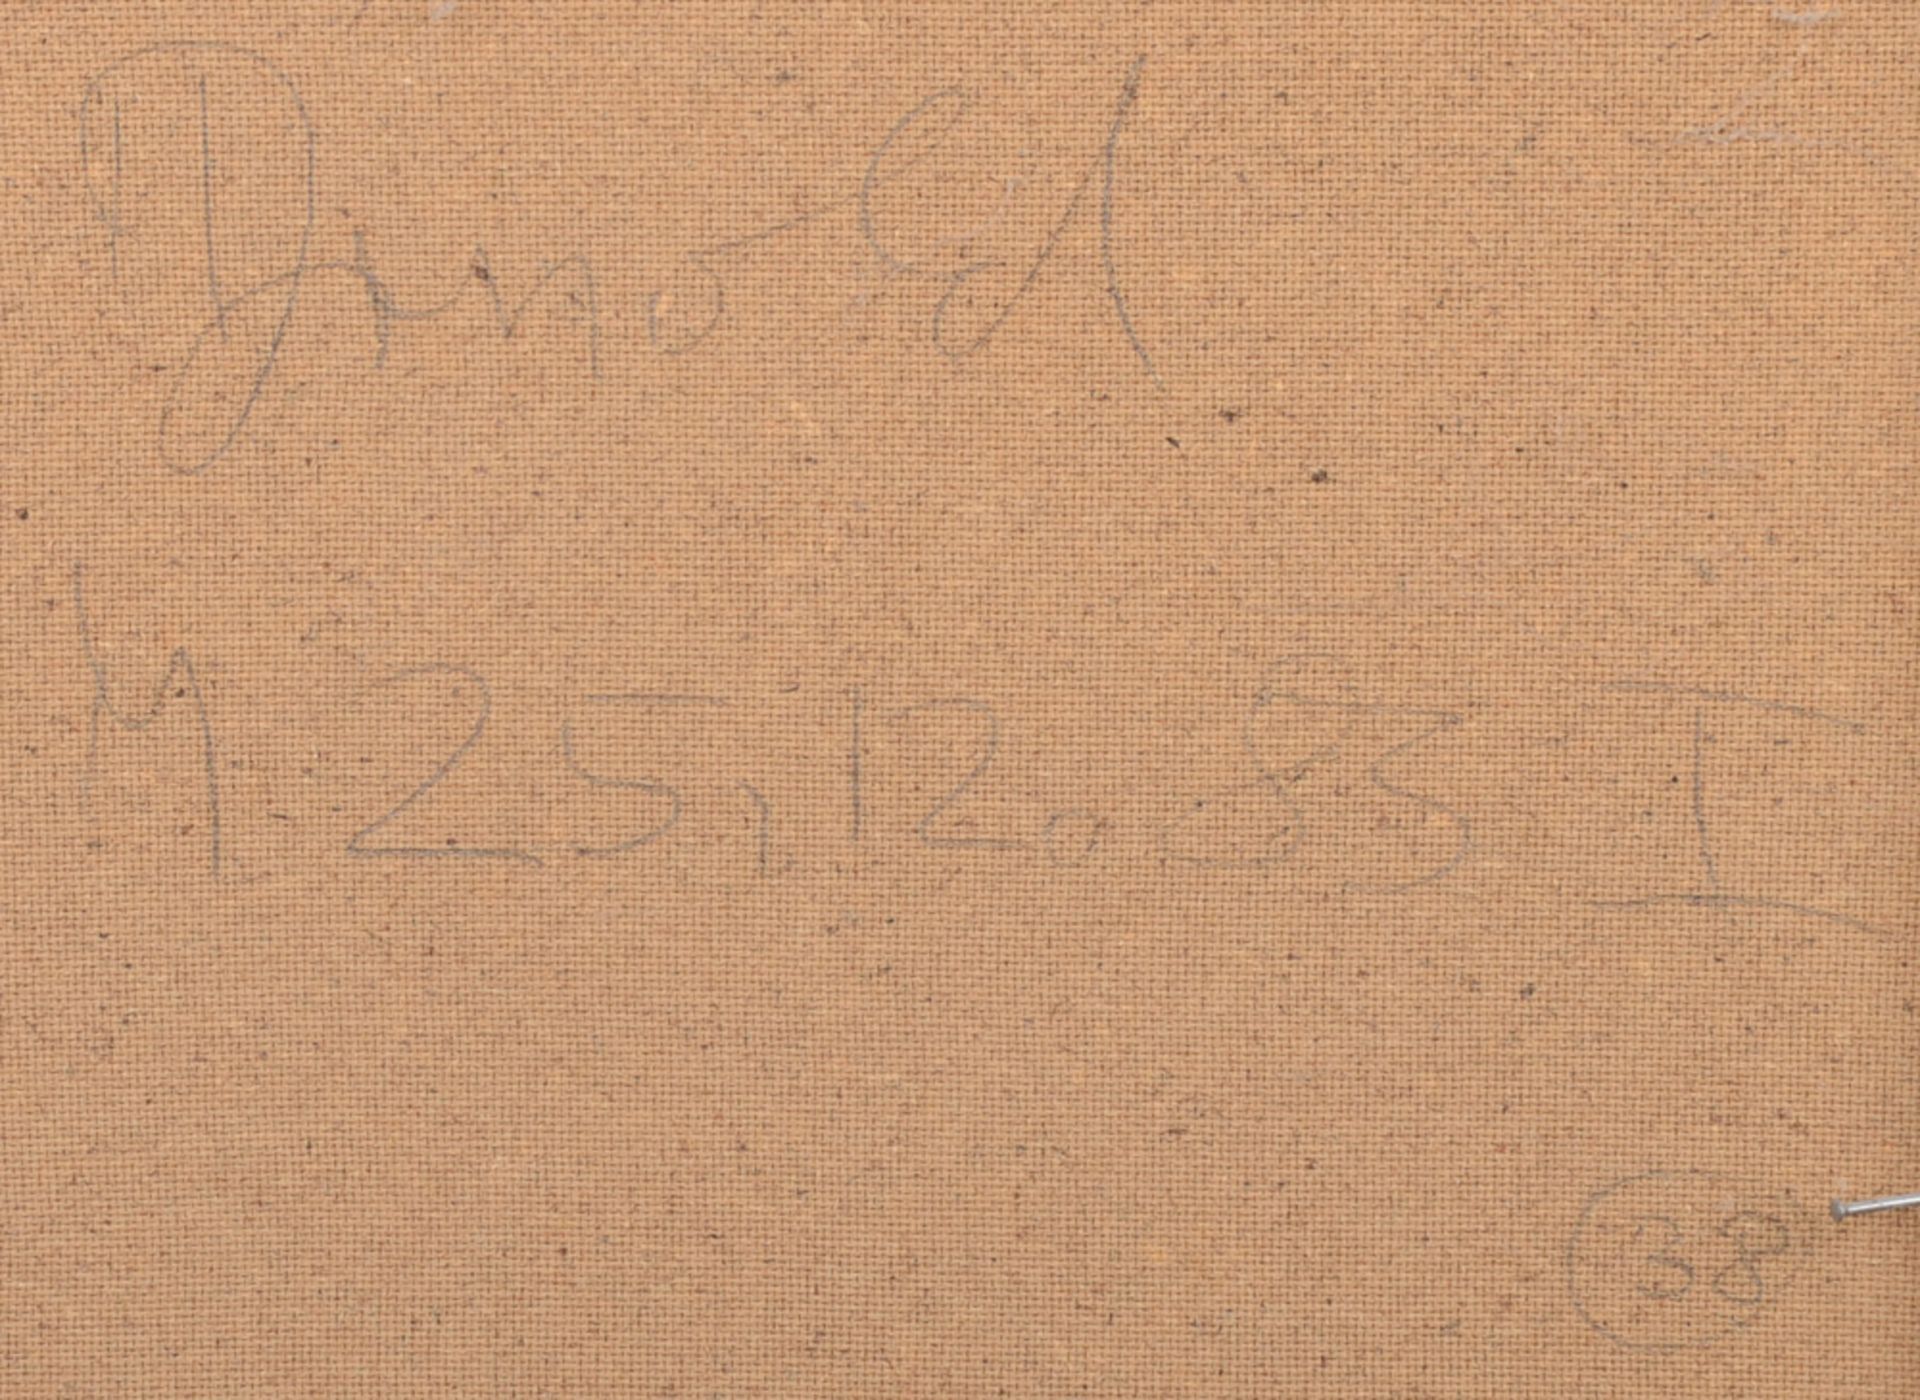 M. Arnold (Maler des 20. Jhs.). Blumenstillleben. Öl/Spanplatte, verso sign., gerahmt, 50 x 40 cm. - Image 2 of 2